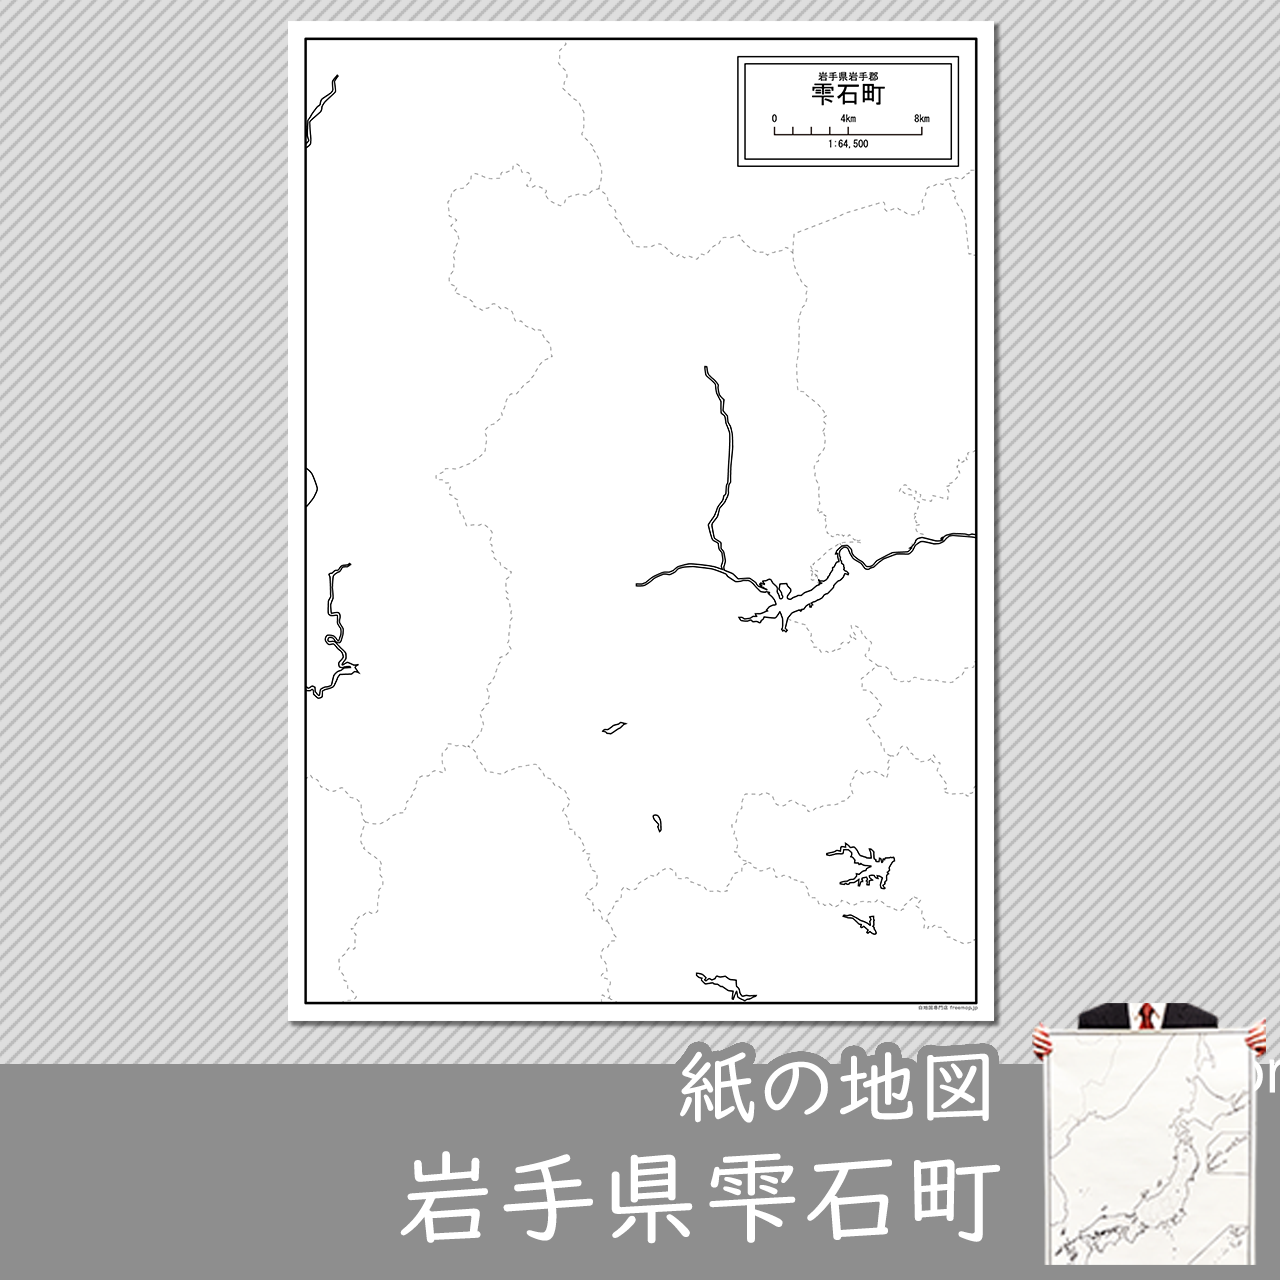 雫石町の紙の白地図